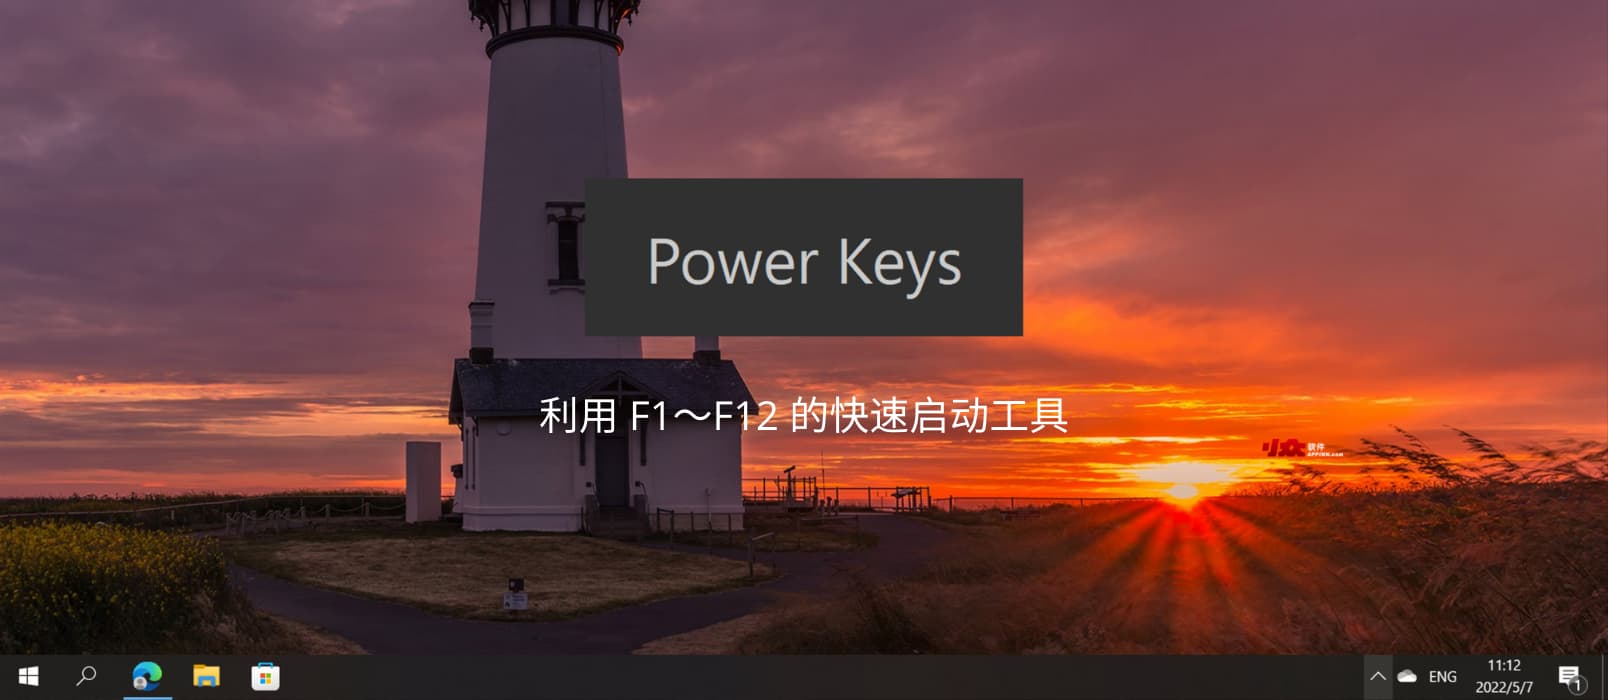 光速启动 Power Keys - 利用 F1～F12 的快速启动工具，还支持 Win 键增强、模拟数字小键盘区、游戏模式等功能